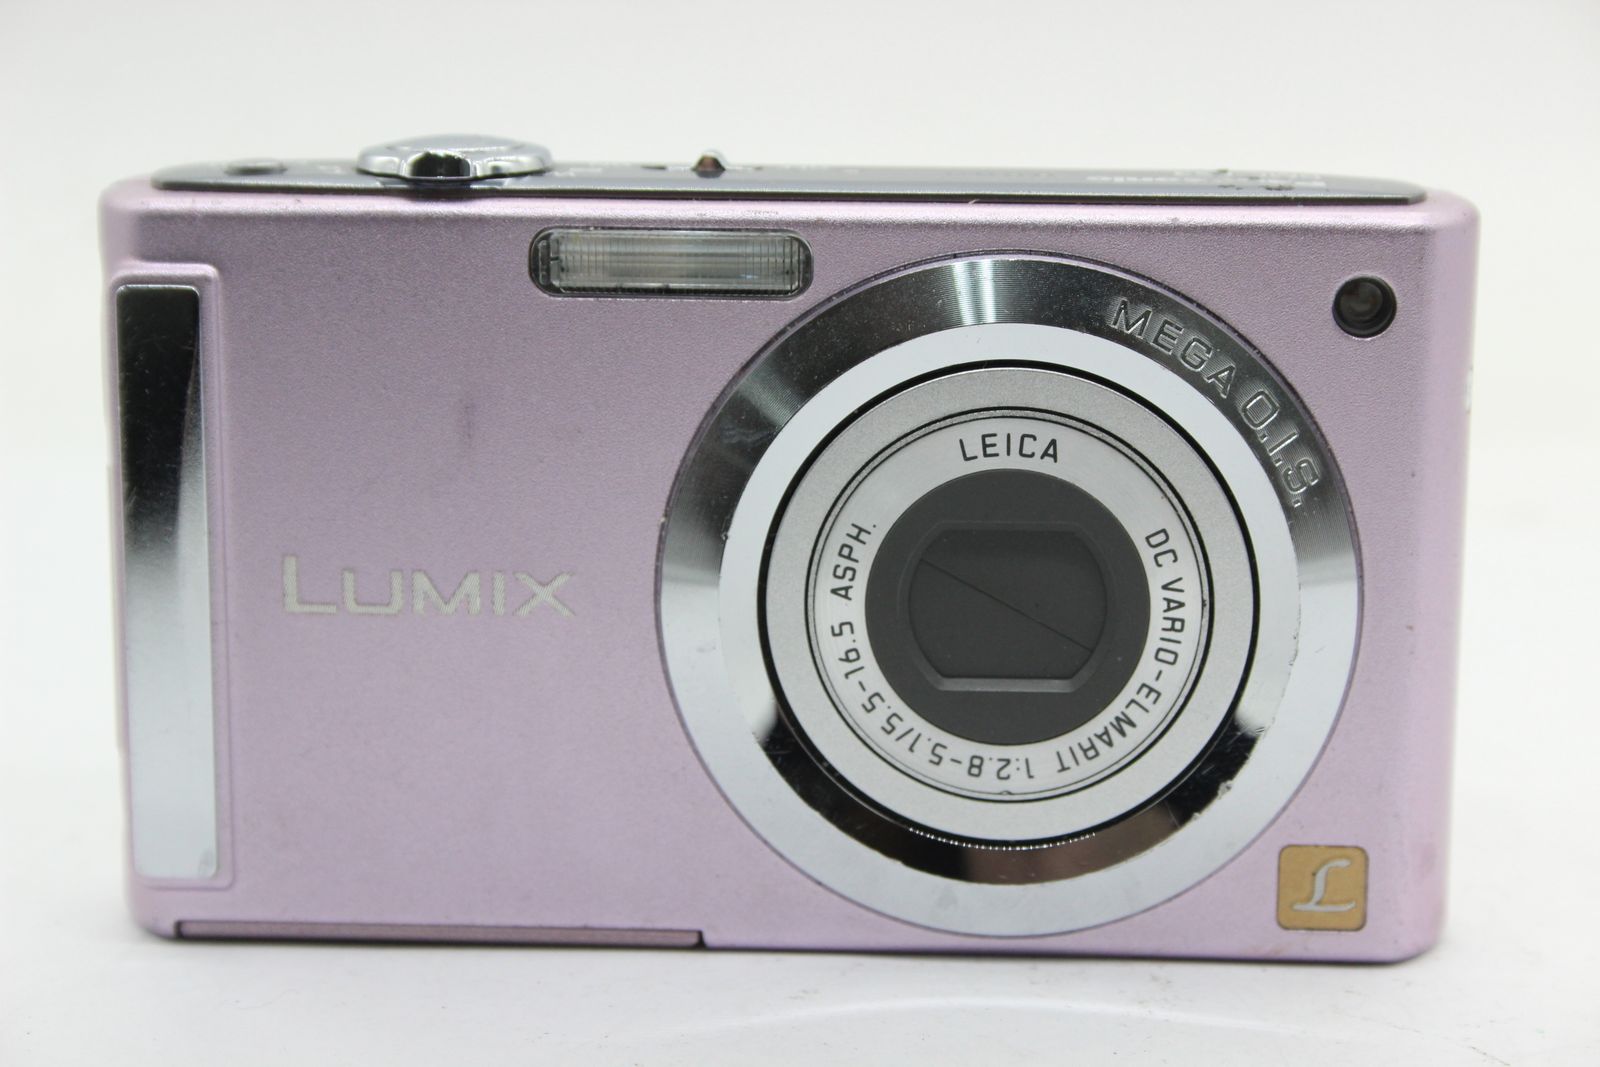 【返品保証】 パナソニック Panasonic LUMIX DMC-FS3 ピンク バッテリー付き コンパクトデジタルカメラ  s4979